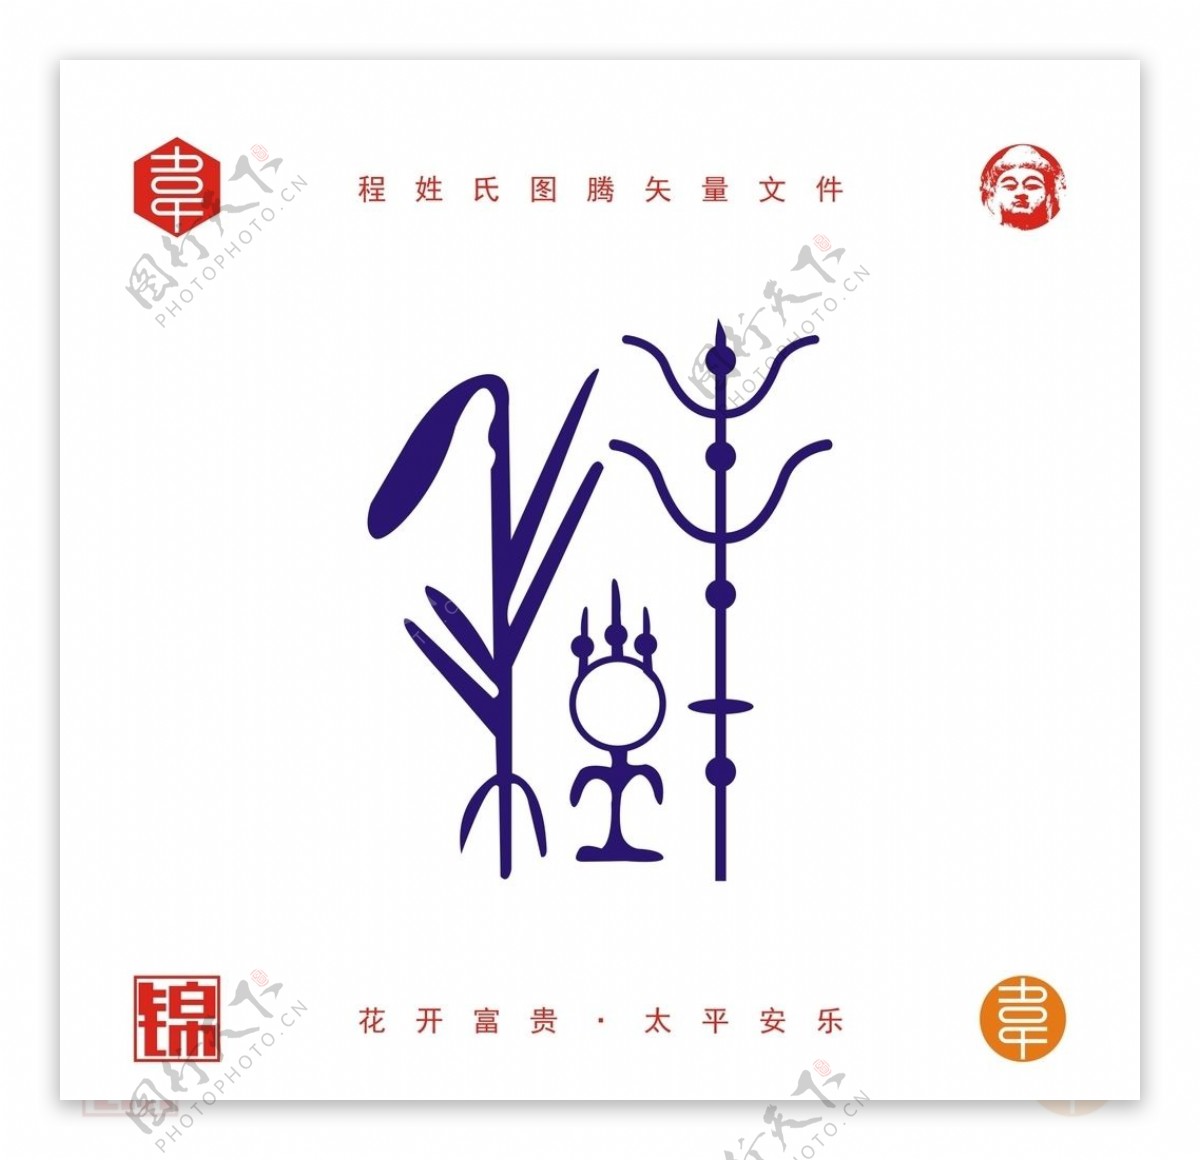 齐图腾_姓氏图腾-中国图腾文化艺术研究院